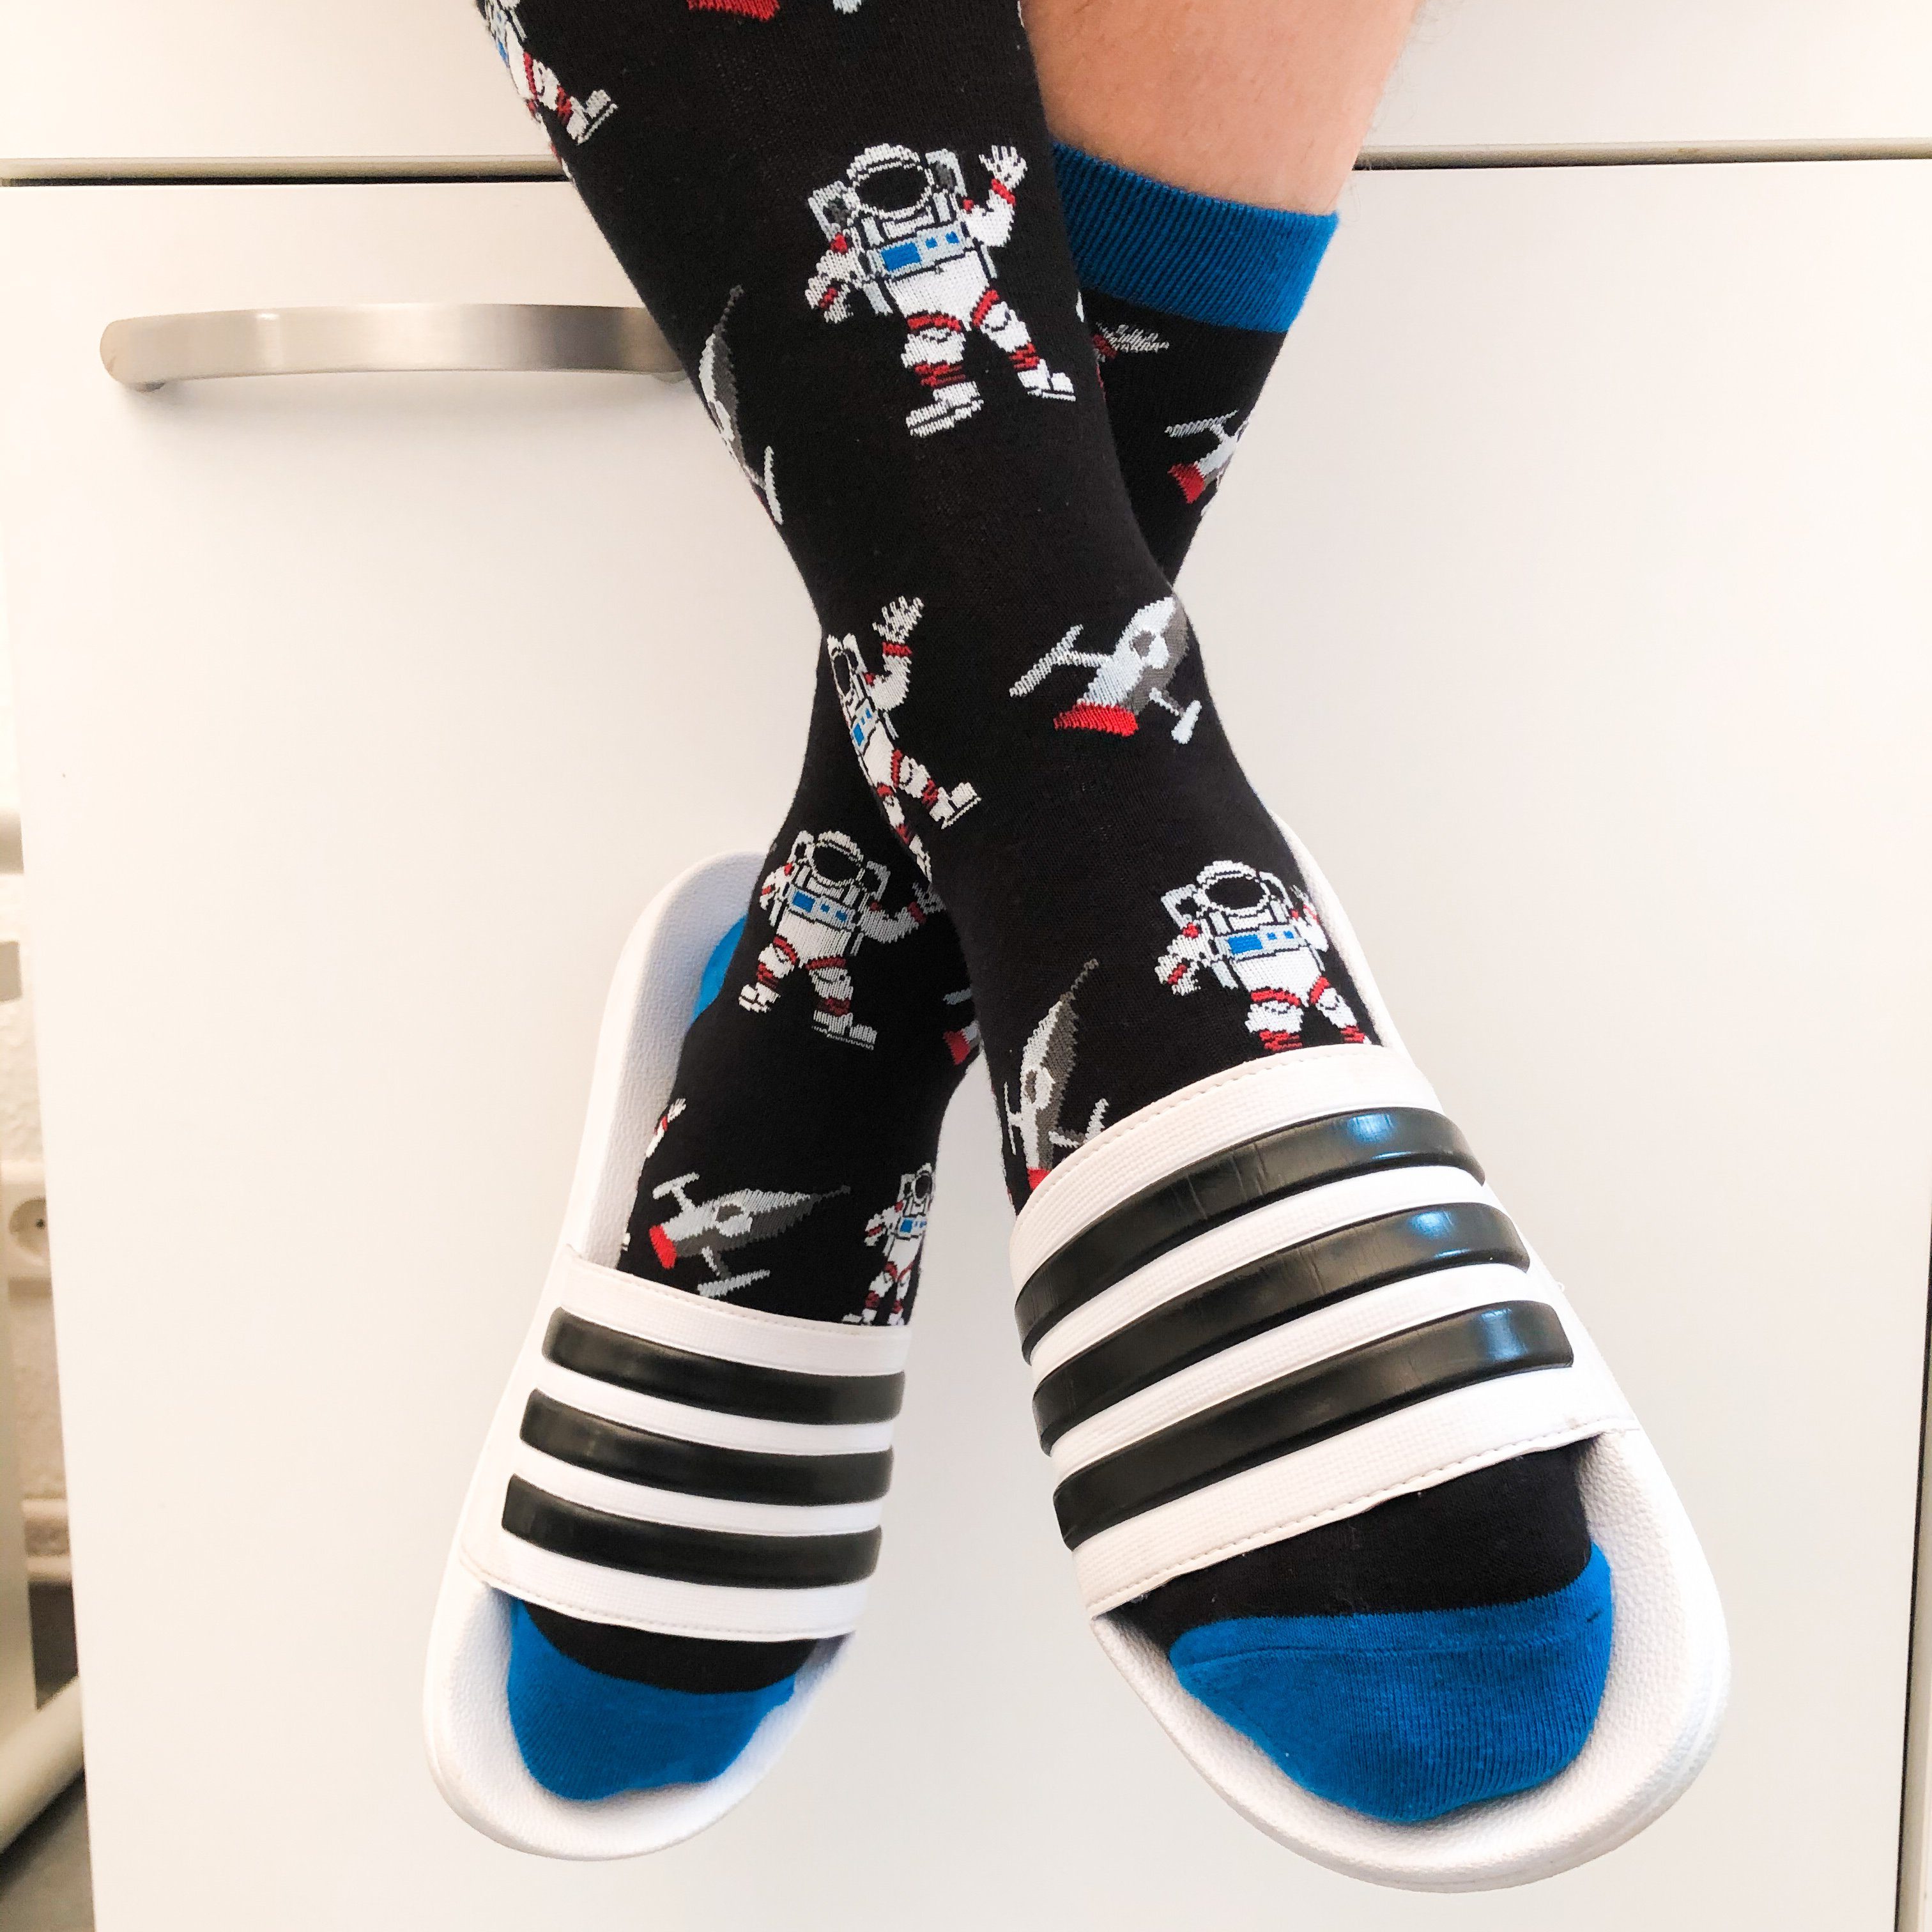 Damen Herren, Socken TwoSocks Freizeitsocken Socken lustige Einheitsgröße Astronaut &